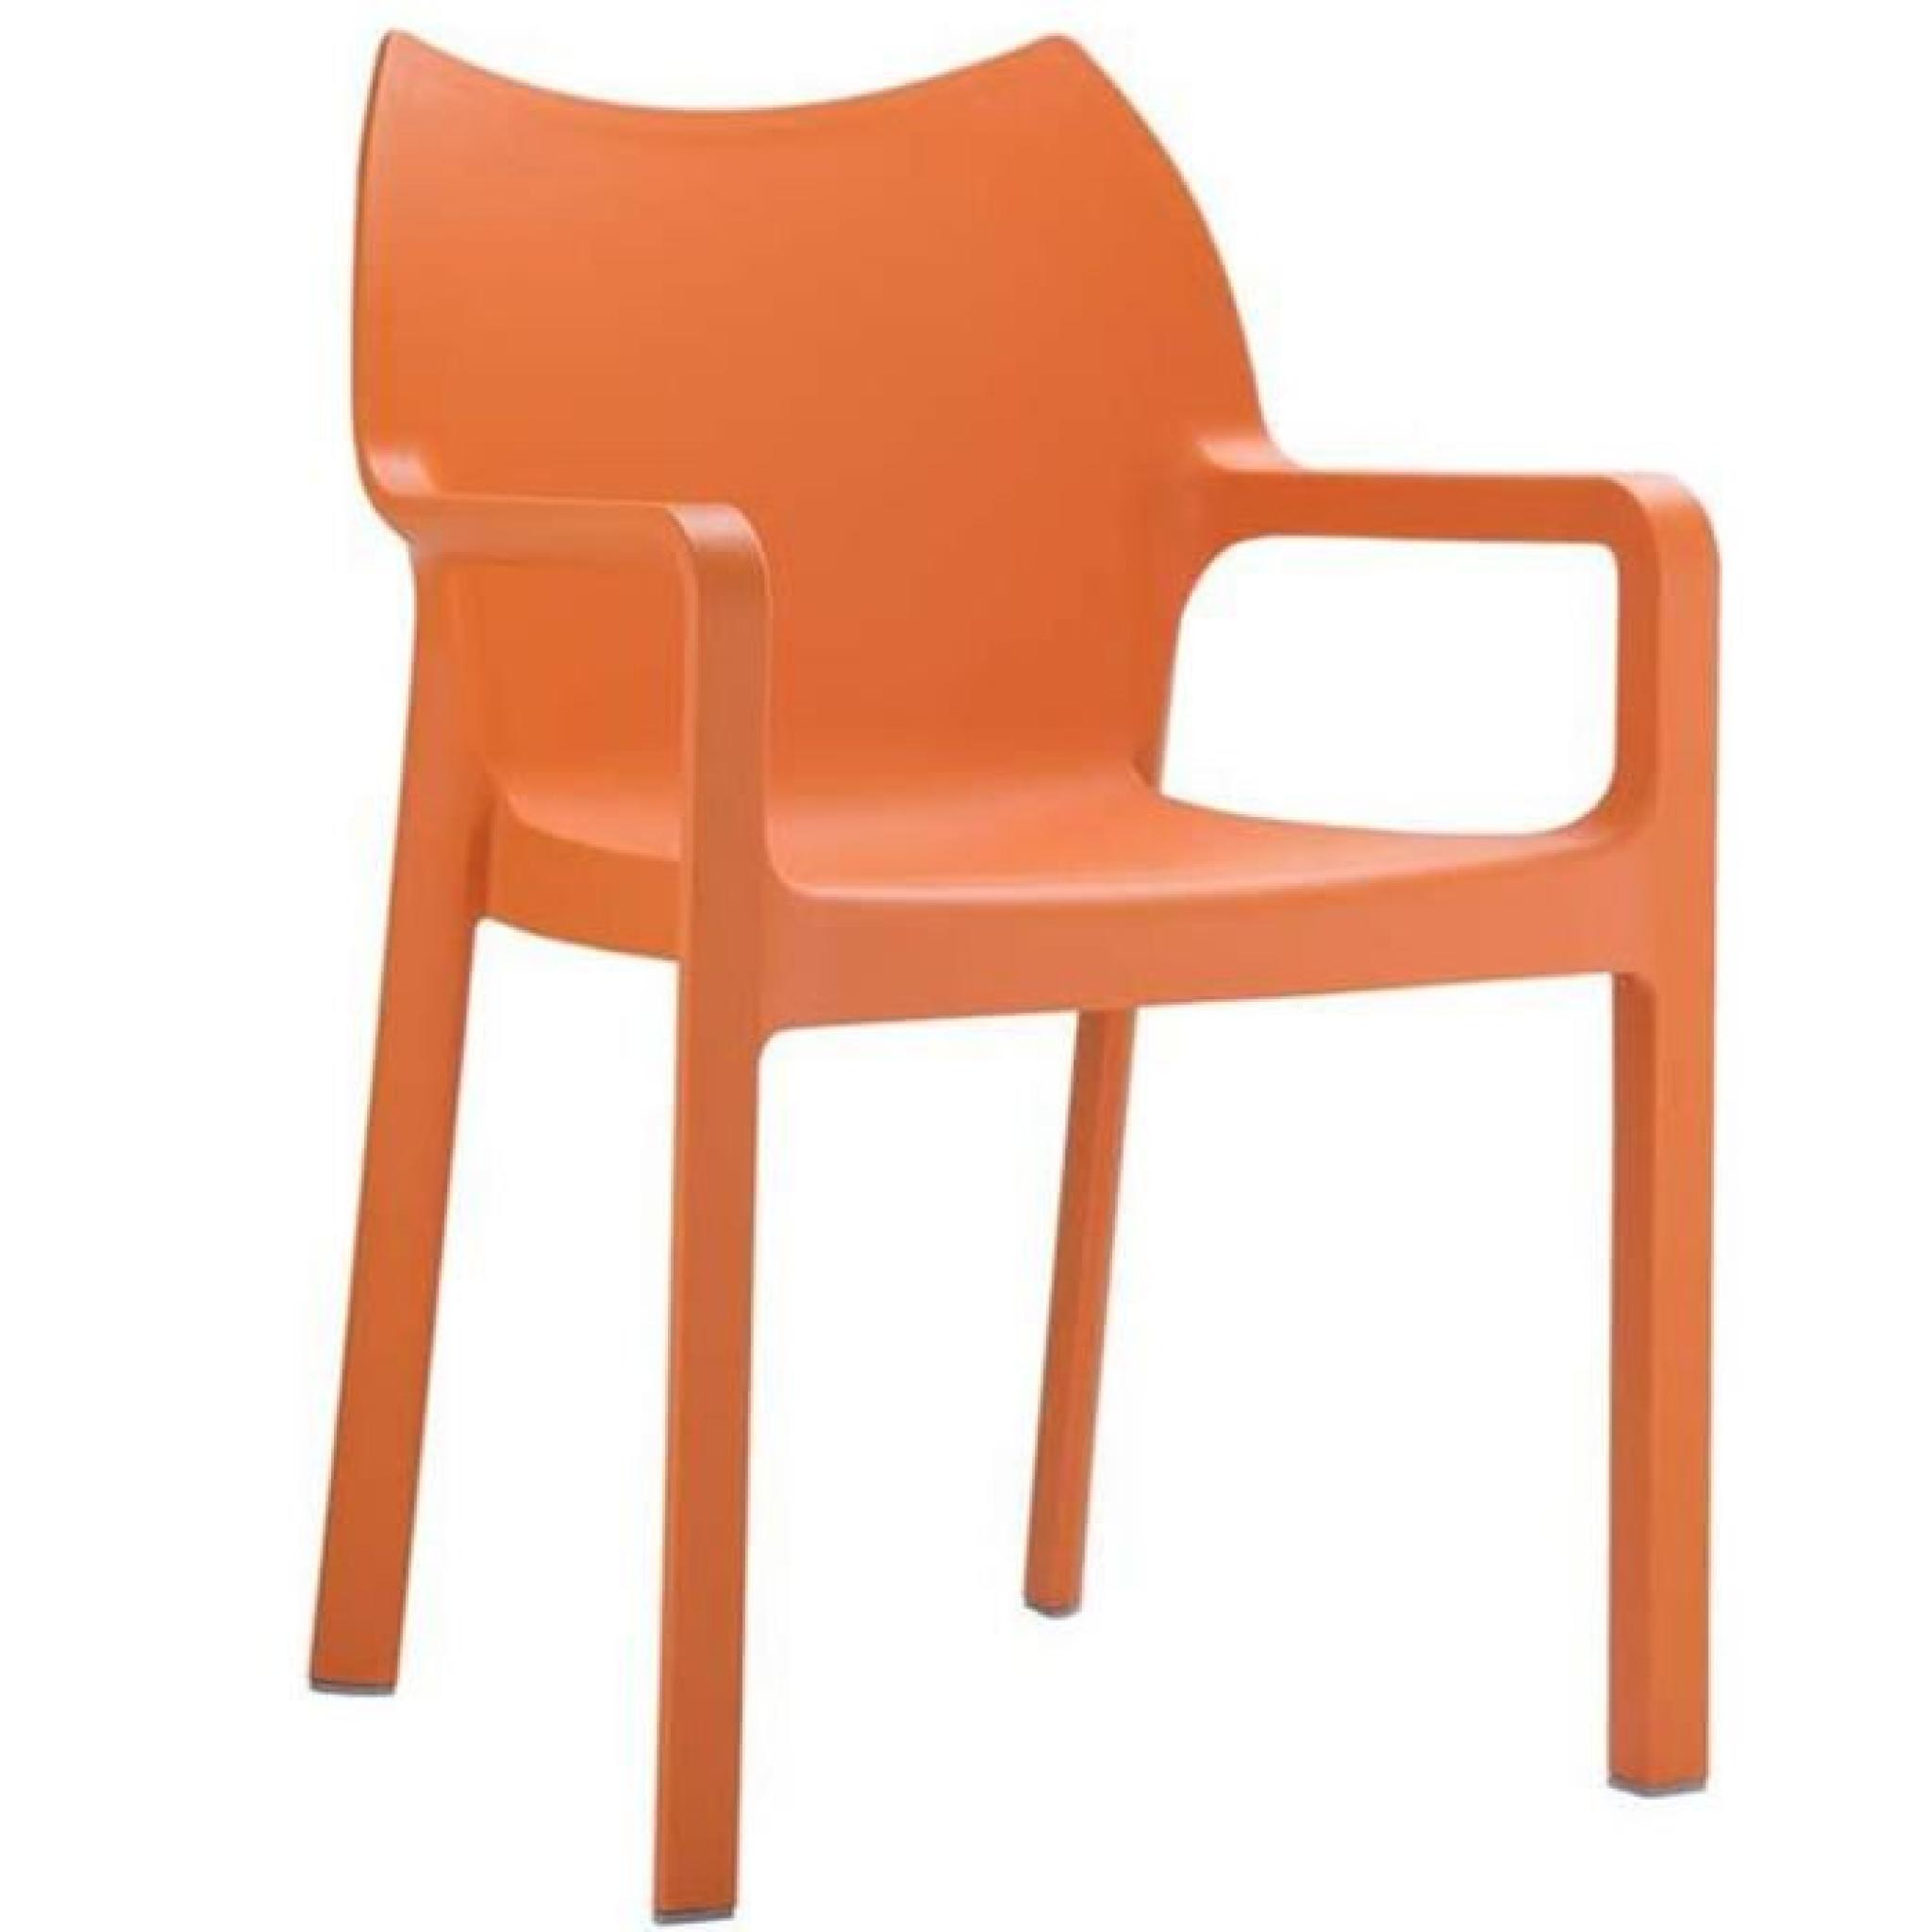 Chaise de jardin empilable en plastique orange, Dim : H84 x P53 x L57 cm